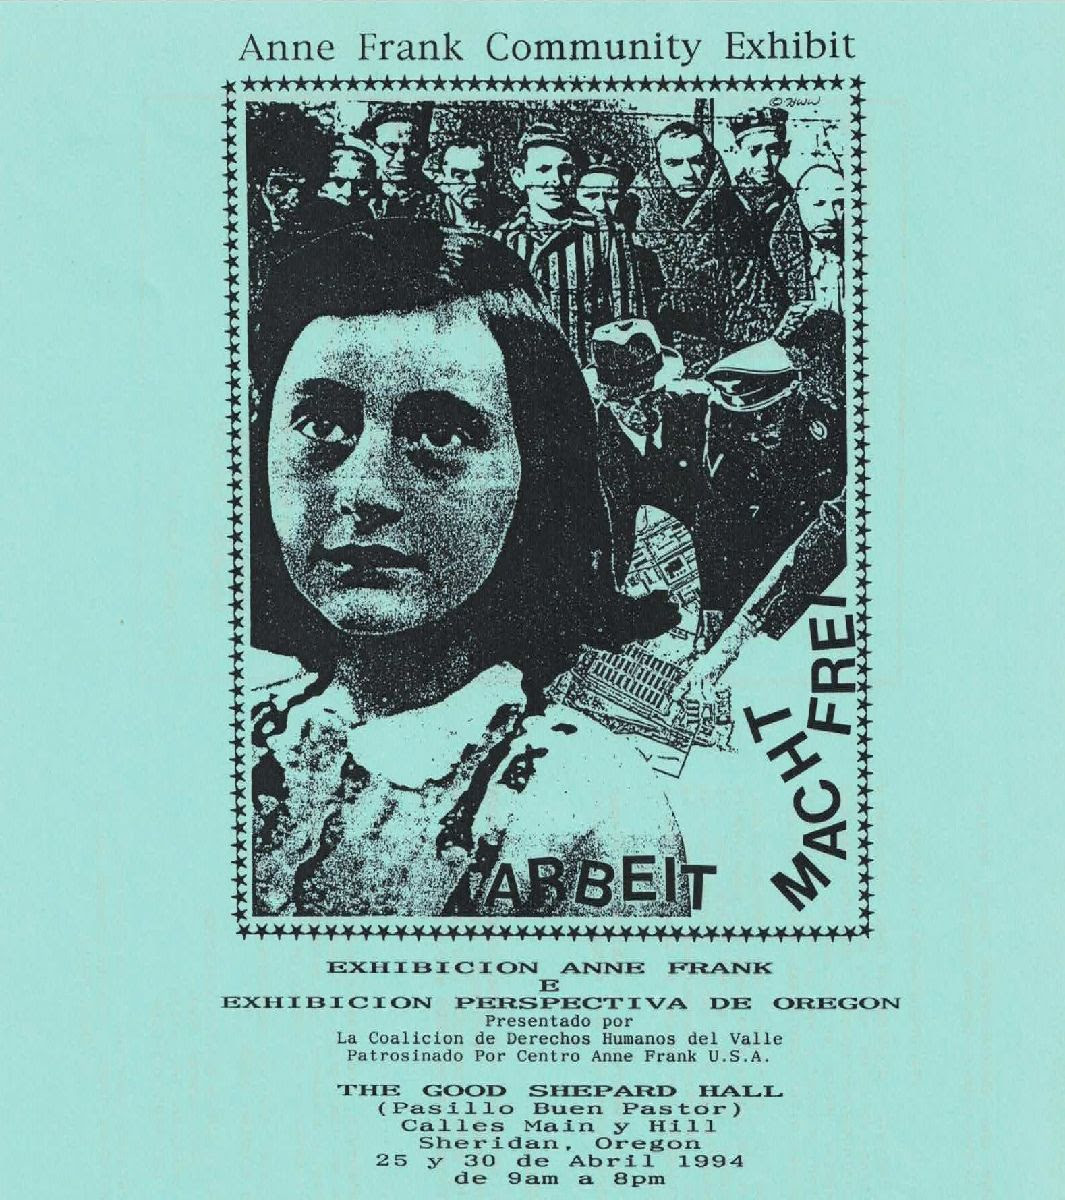 미국 OR 셰리던에서 열리는 안네 프랑크 전시회의 스페인어 포스터